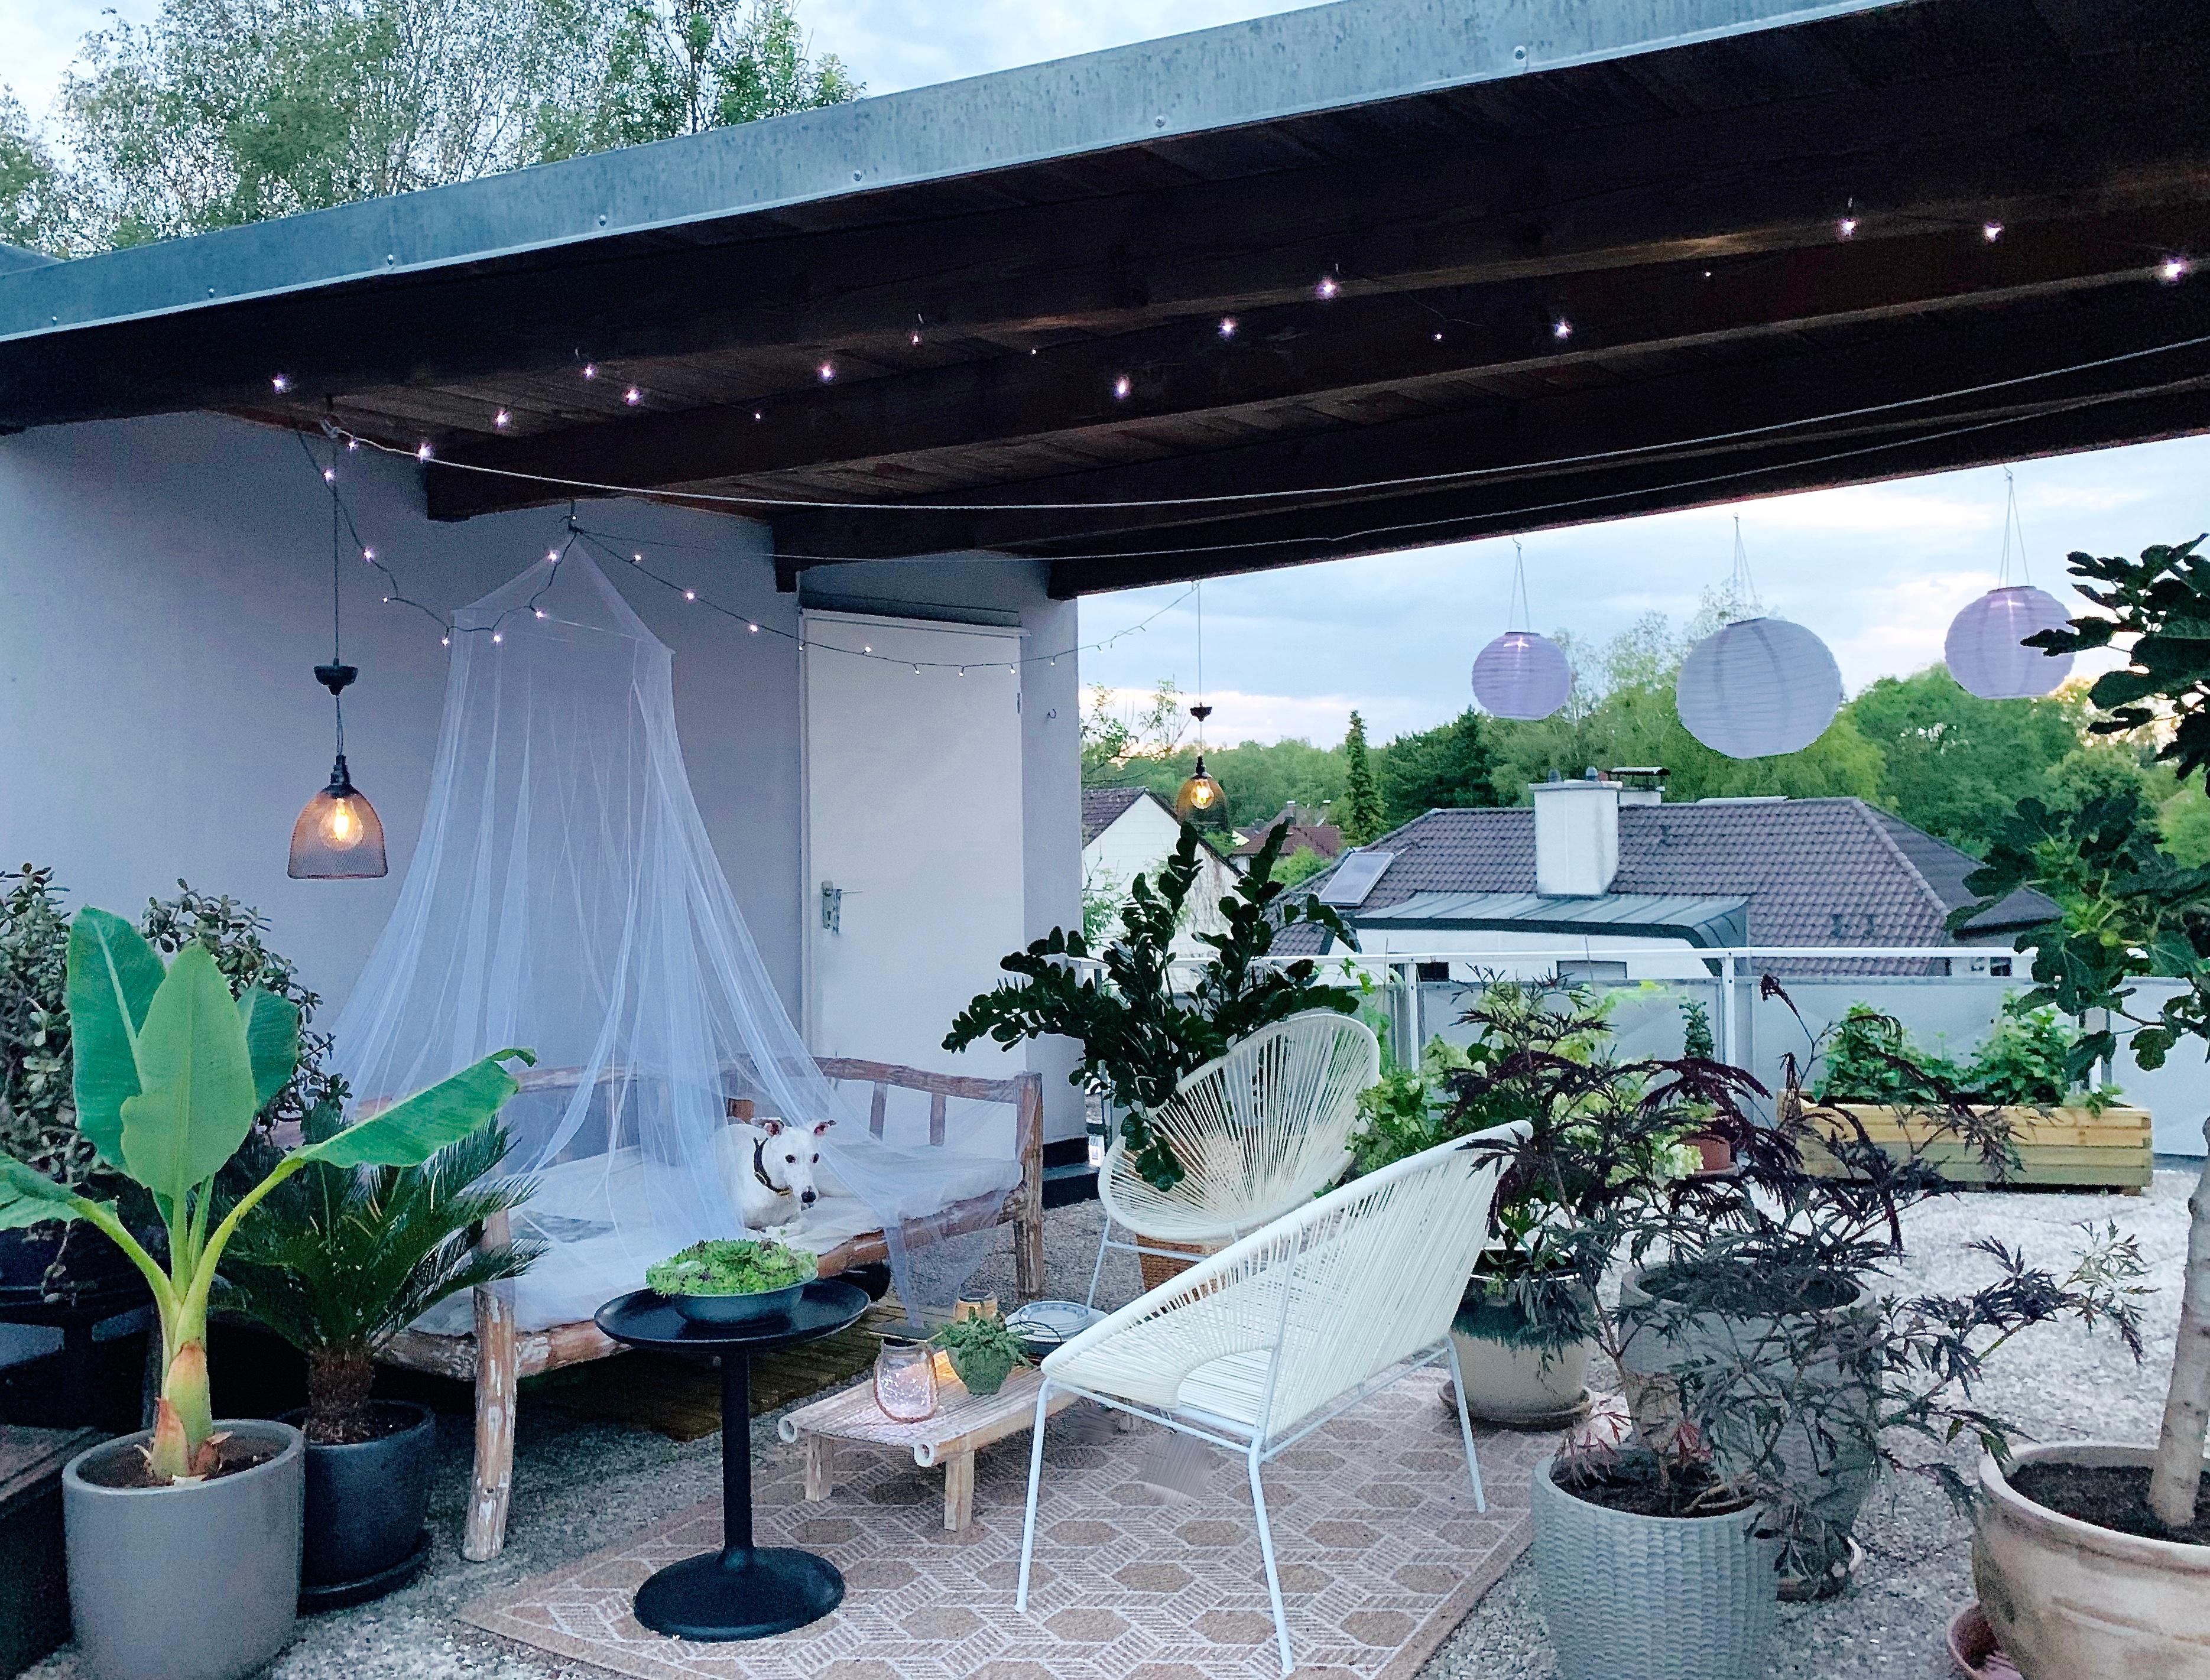 Meine kleine Dach-Oase 🌱 #rooftop #sommerabend #dachterrasse #urbangardening #livingwithplants #daybed #lovesummer